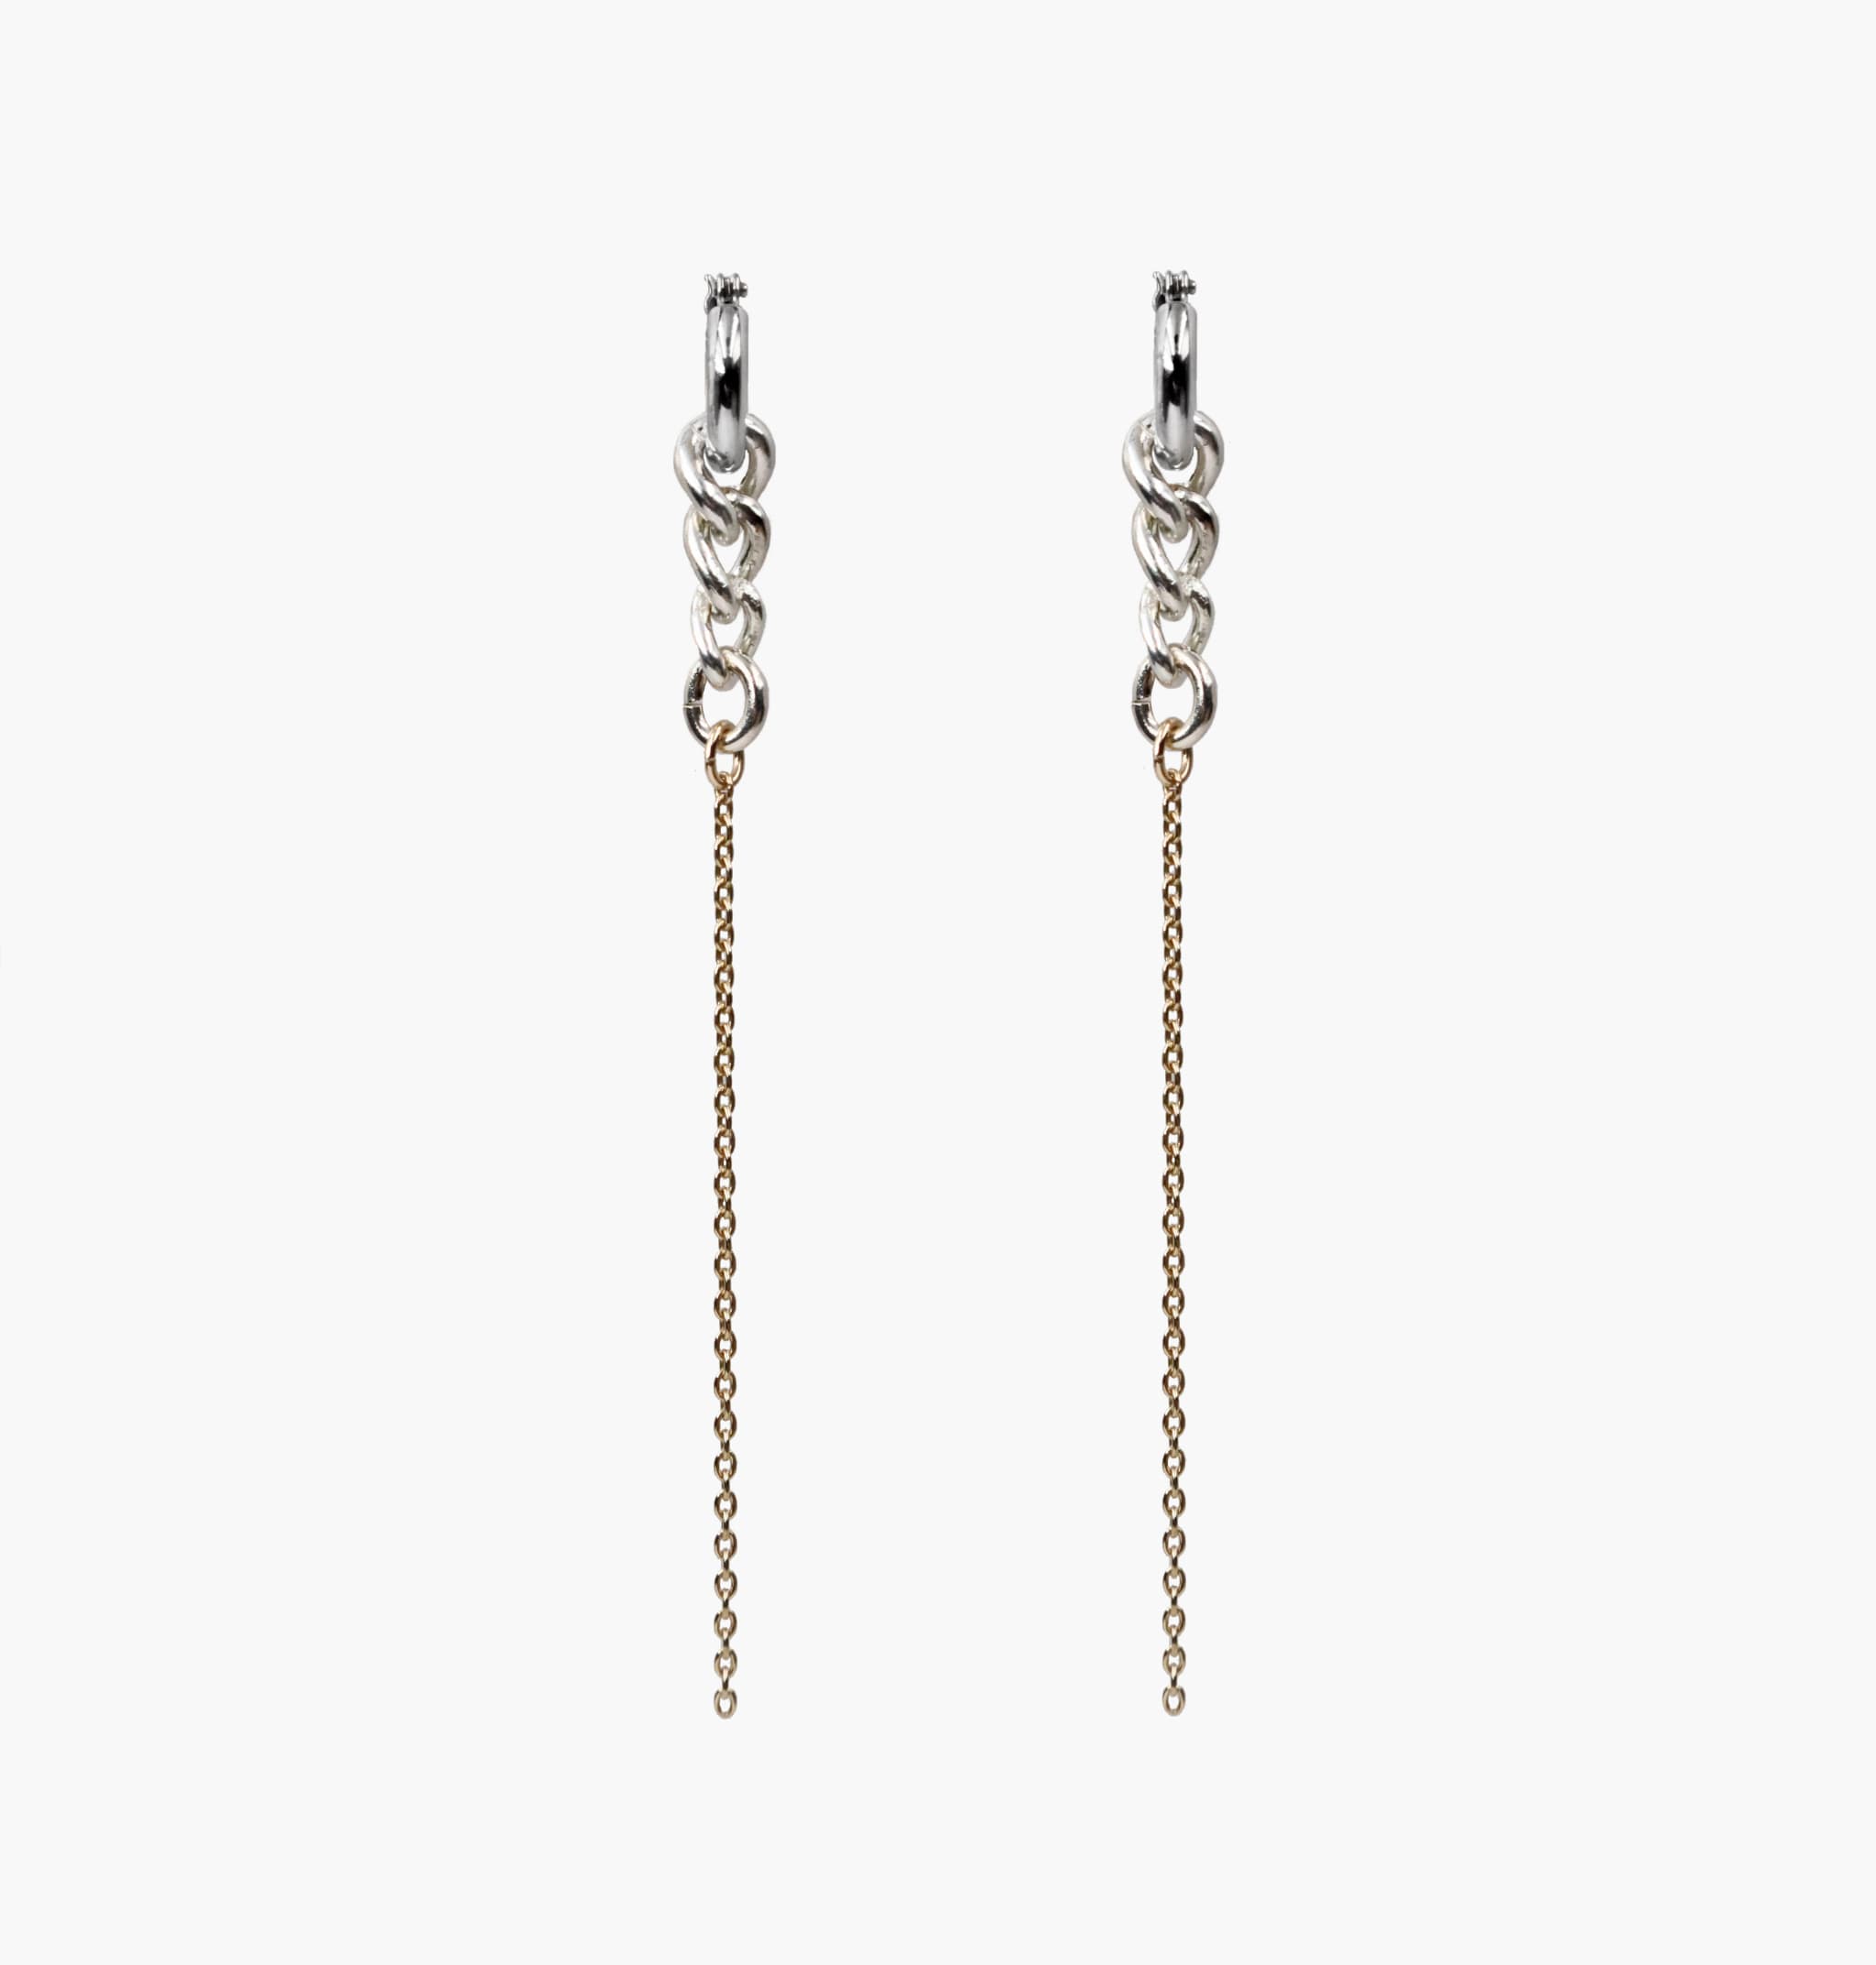 Modelo Chain Earrings S/Silver K10 Pink Gold